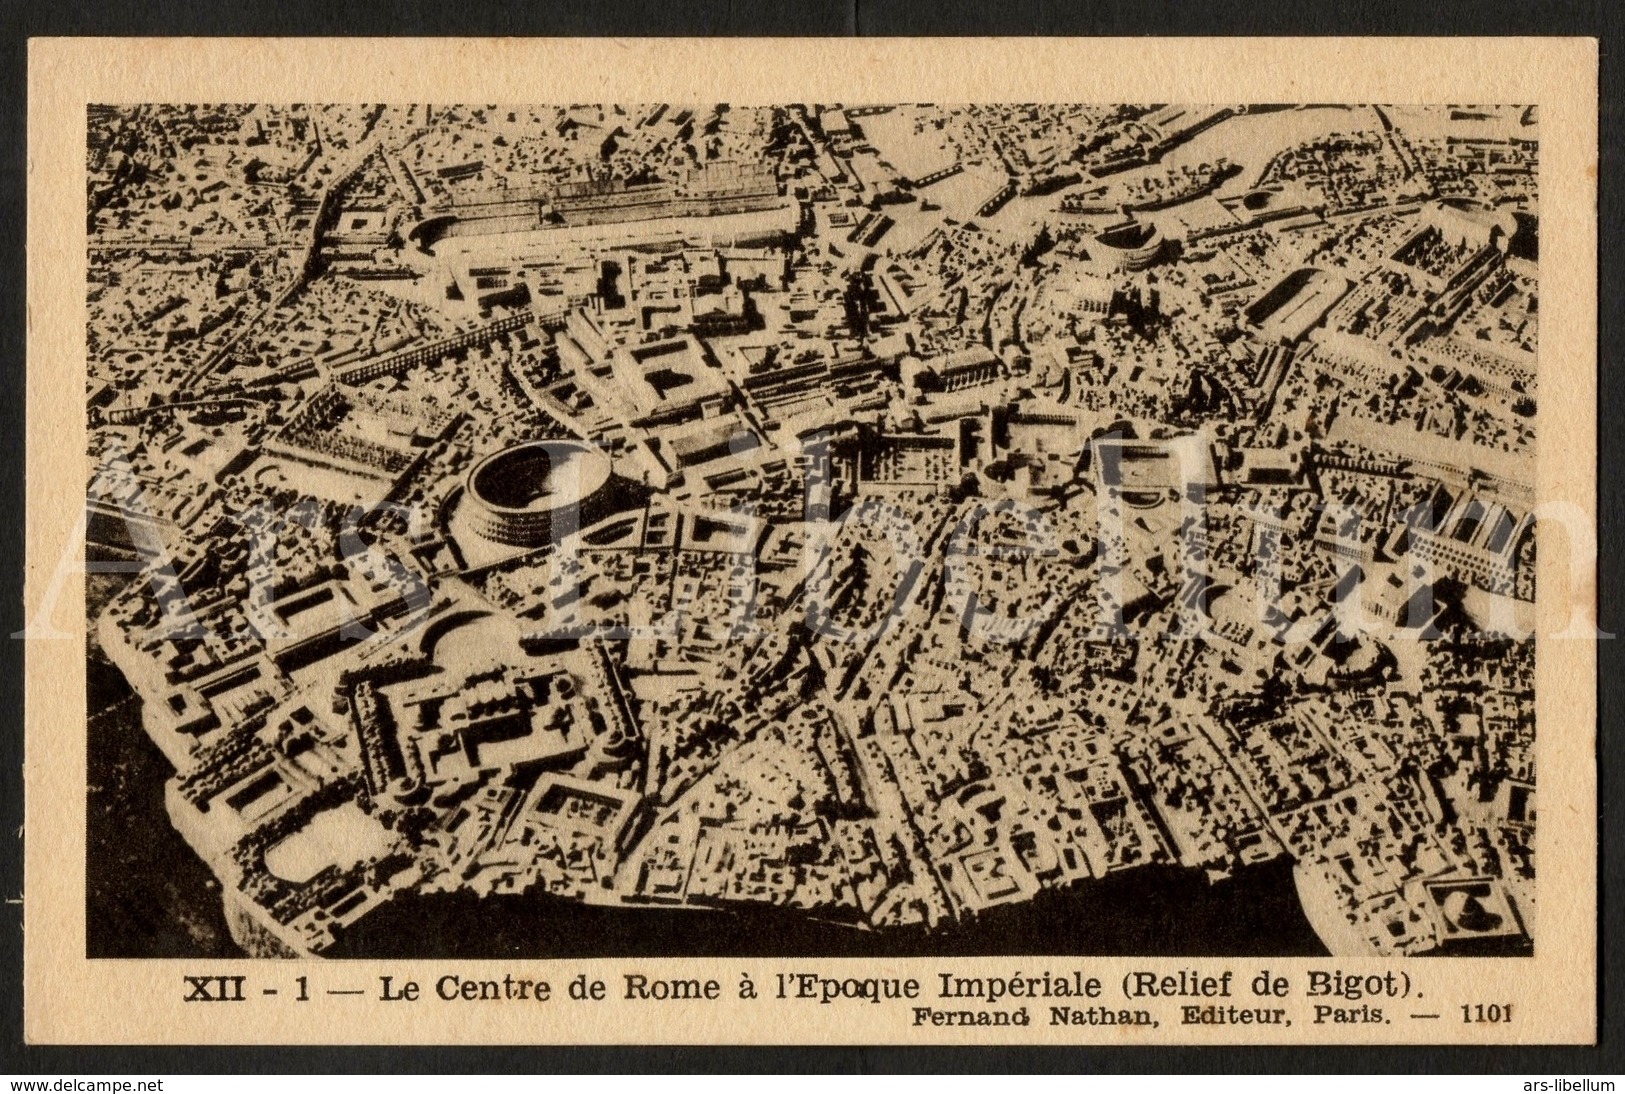 Postcard / CPA / Fernand Nathan / Unused / Le Centre De Rome à L'Epoque Impériale / Relief De Bigot / XII-1 / 1101 - Histoire